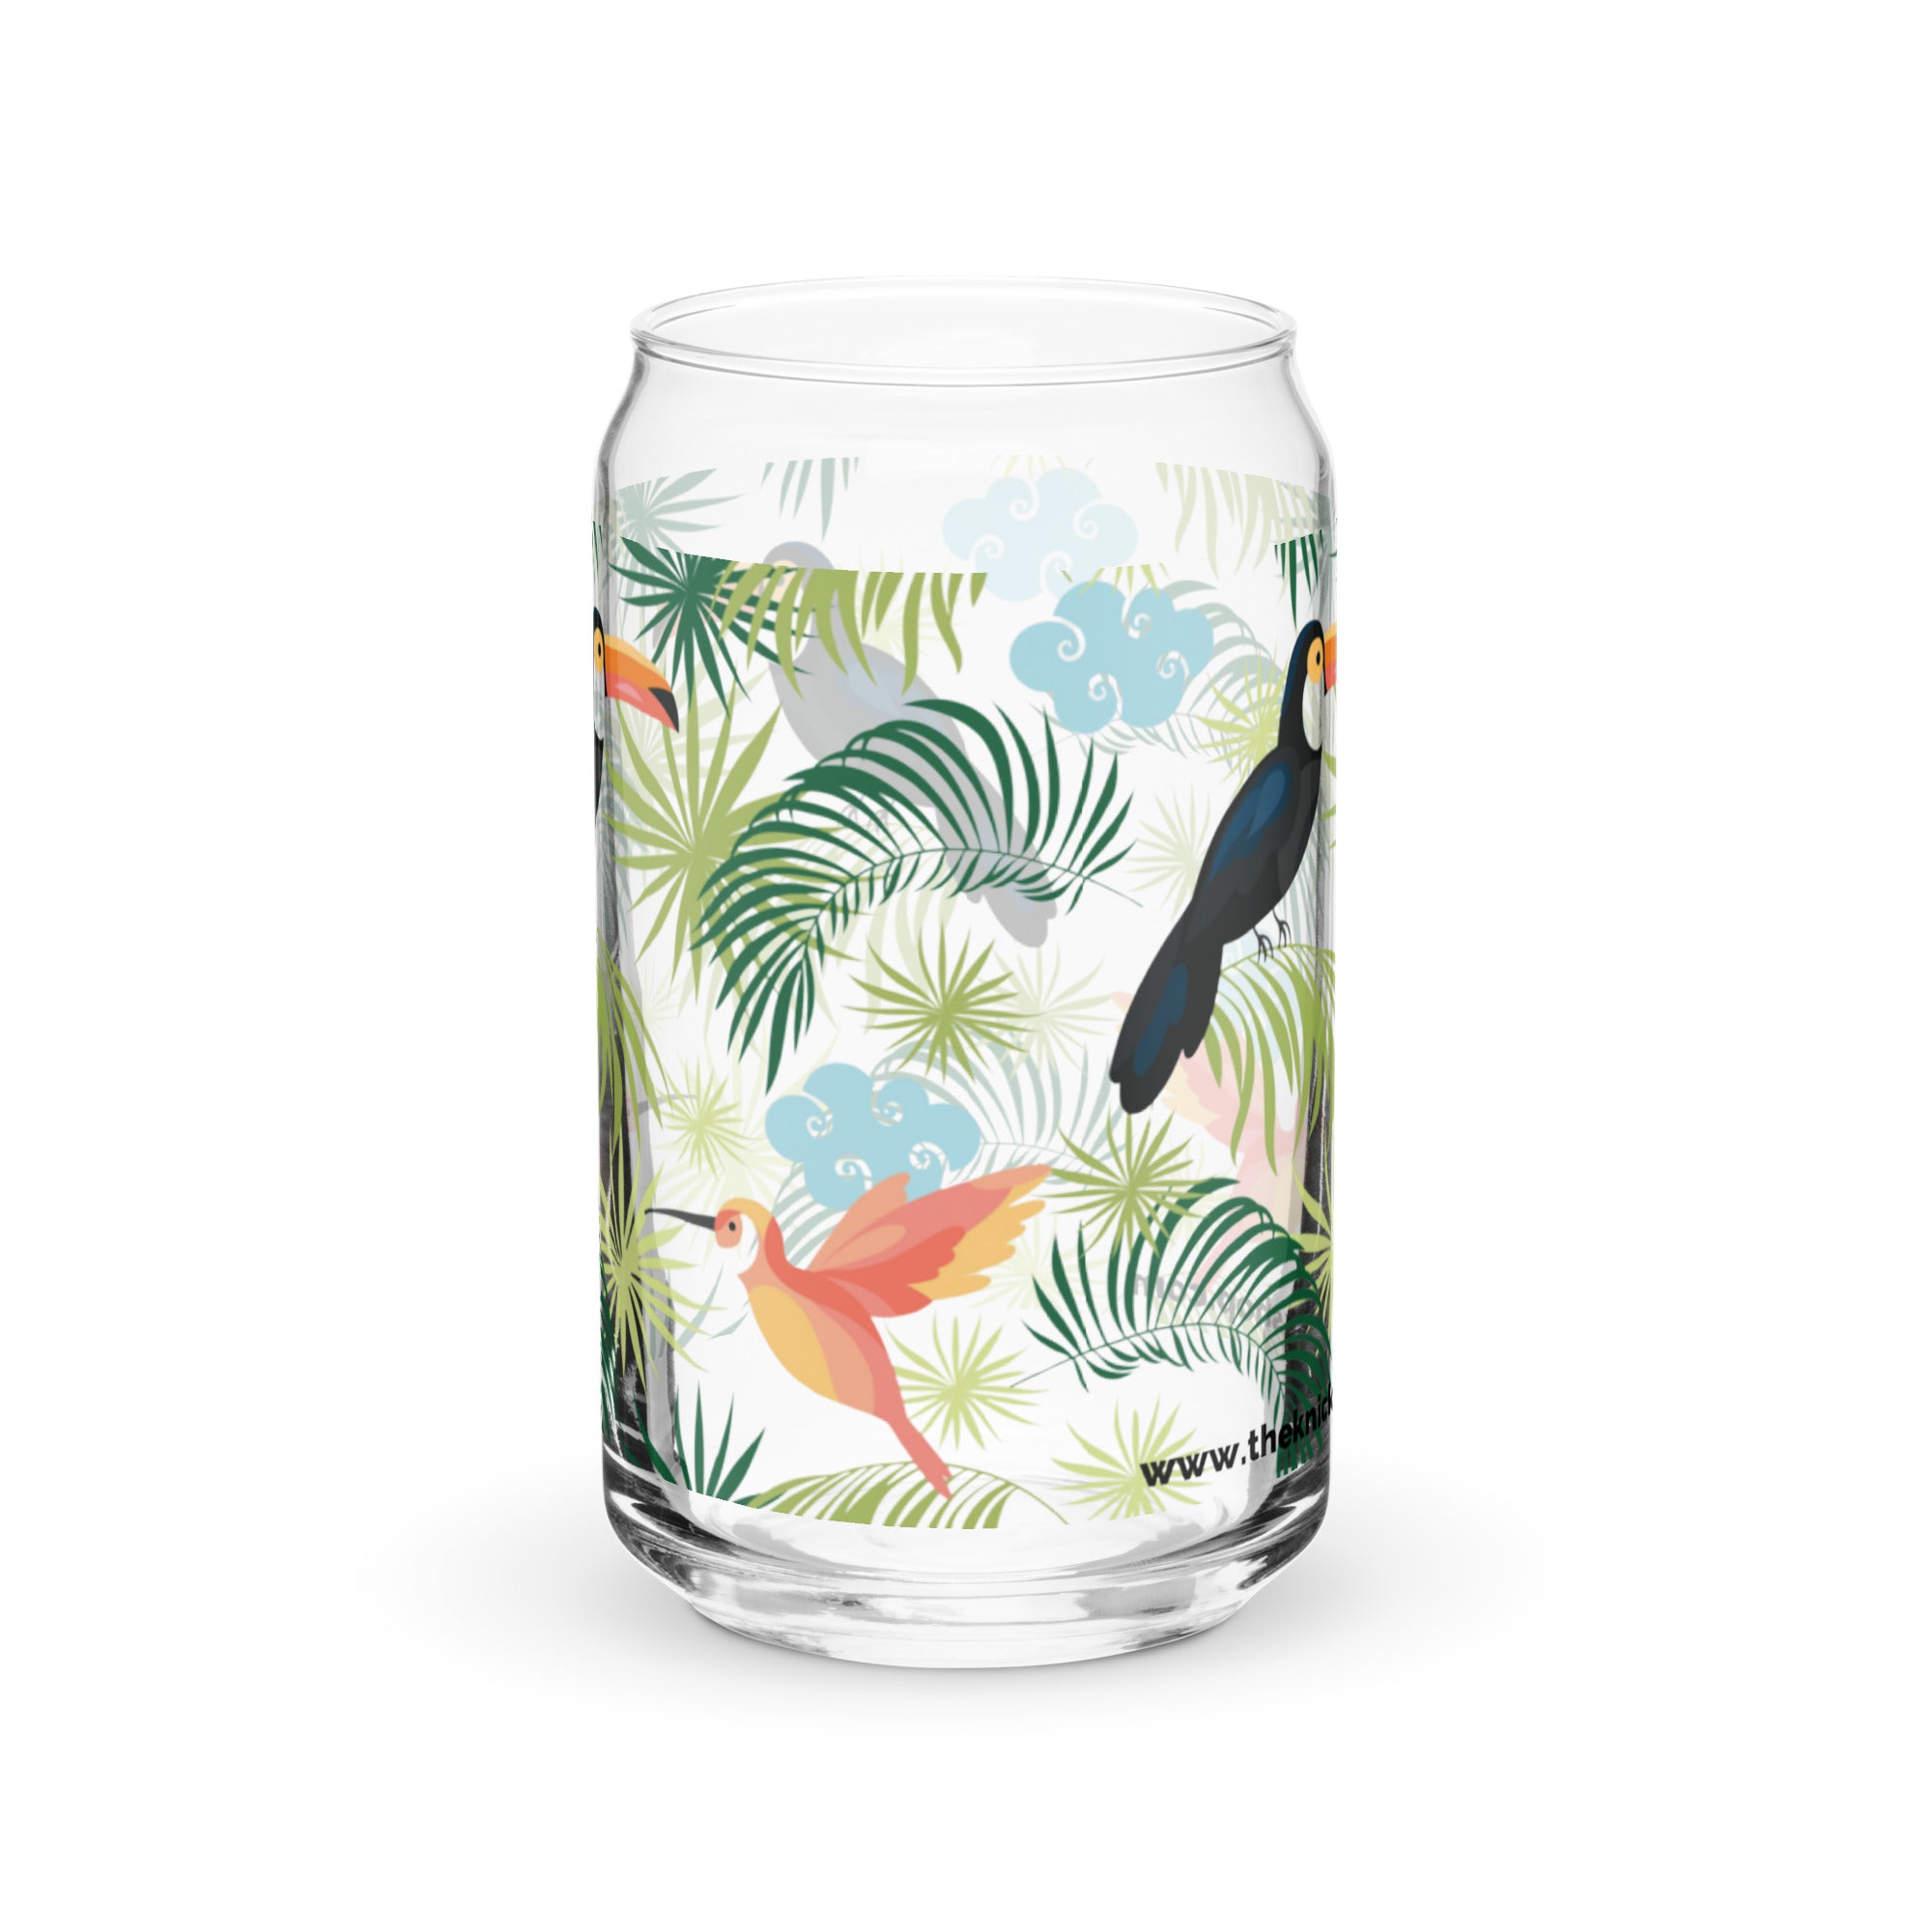 Vaso con forma de lata (16oz) - Aves tropicales